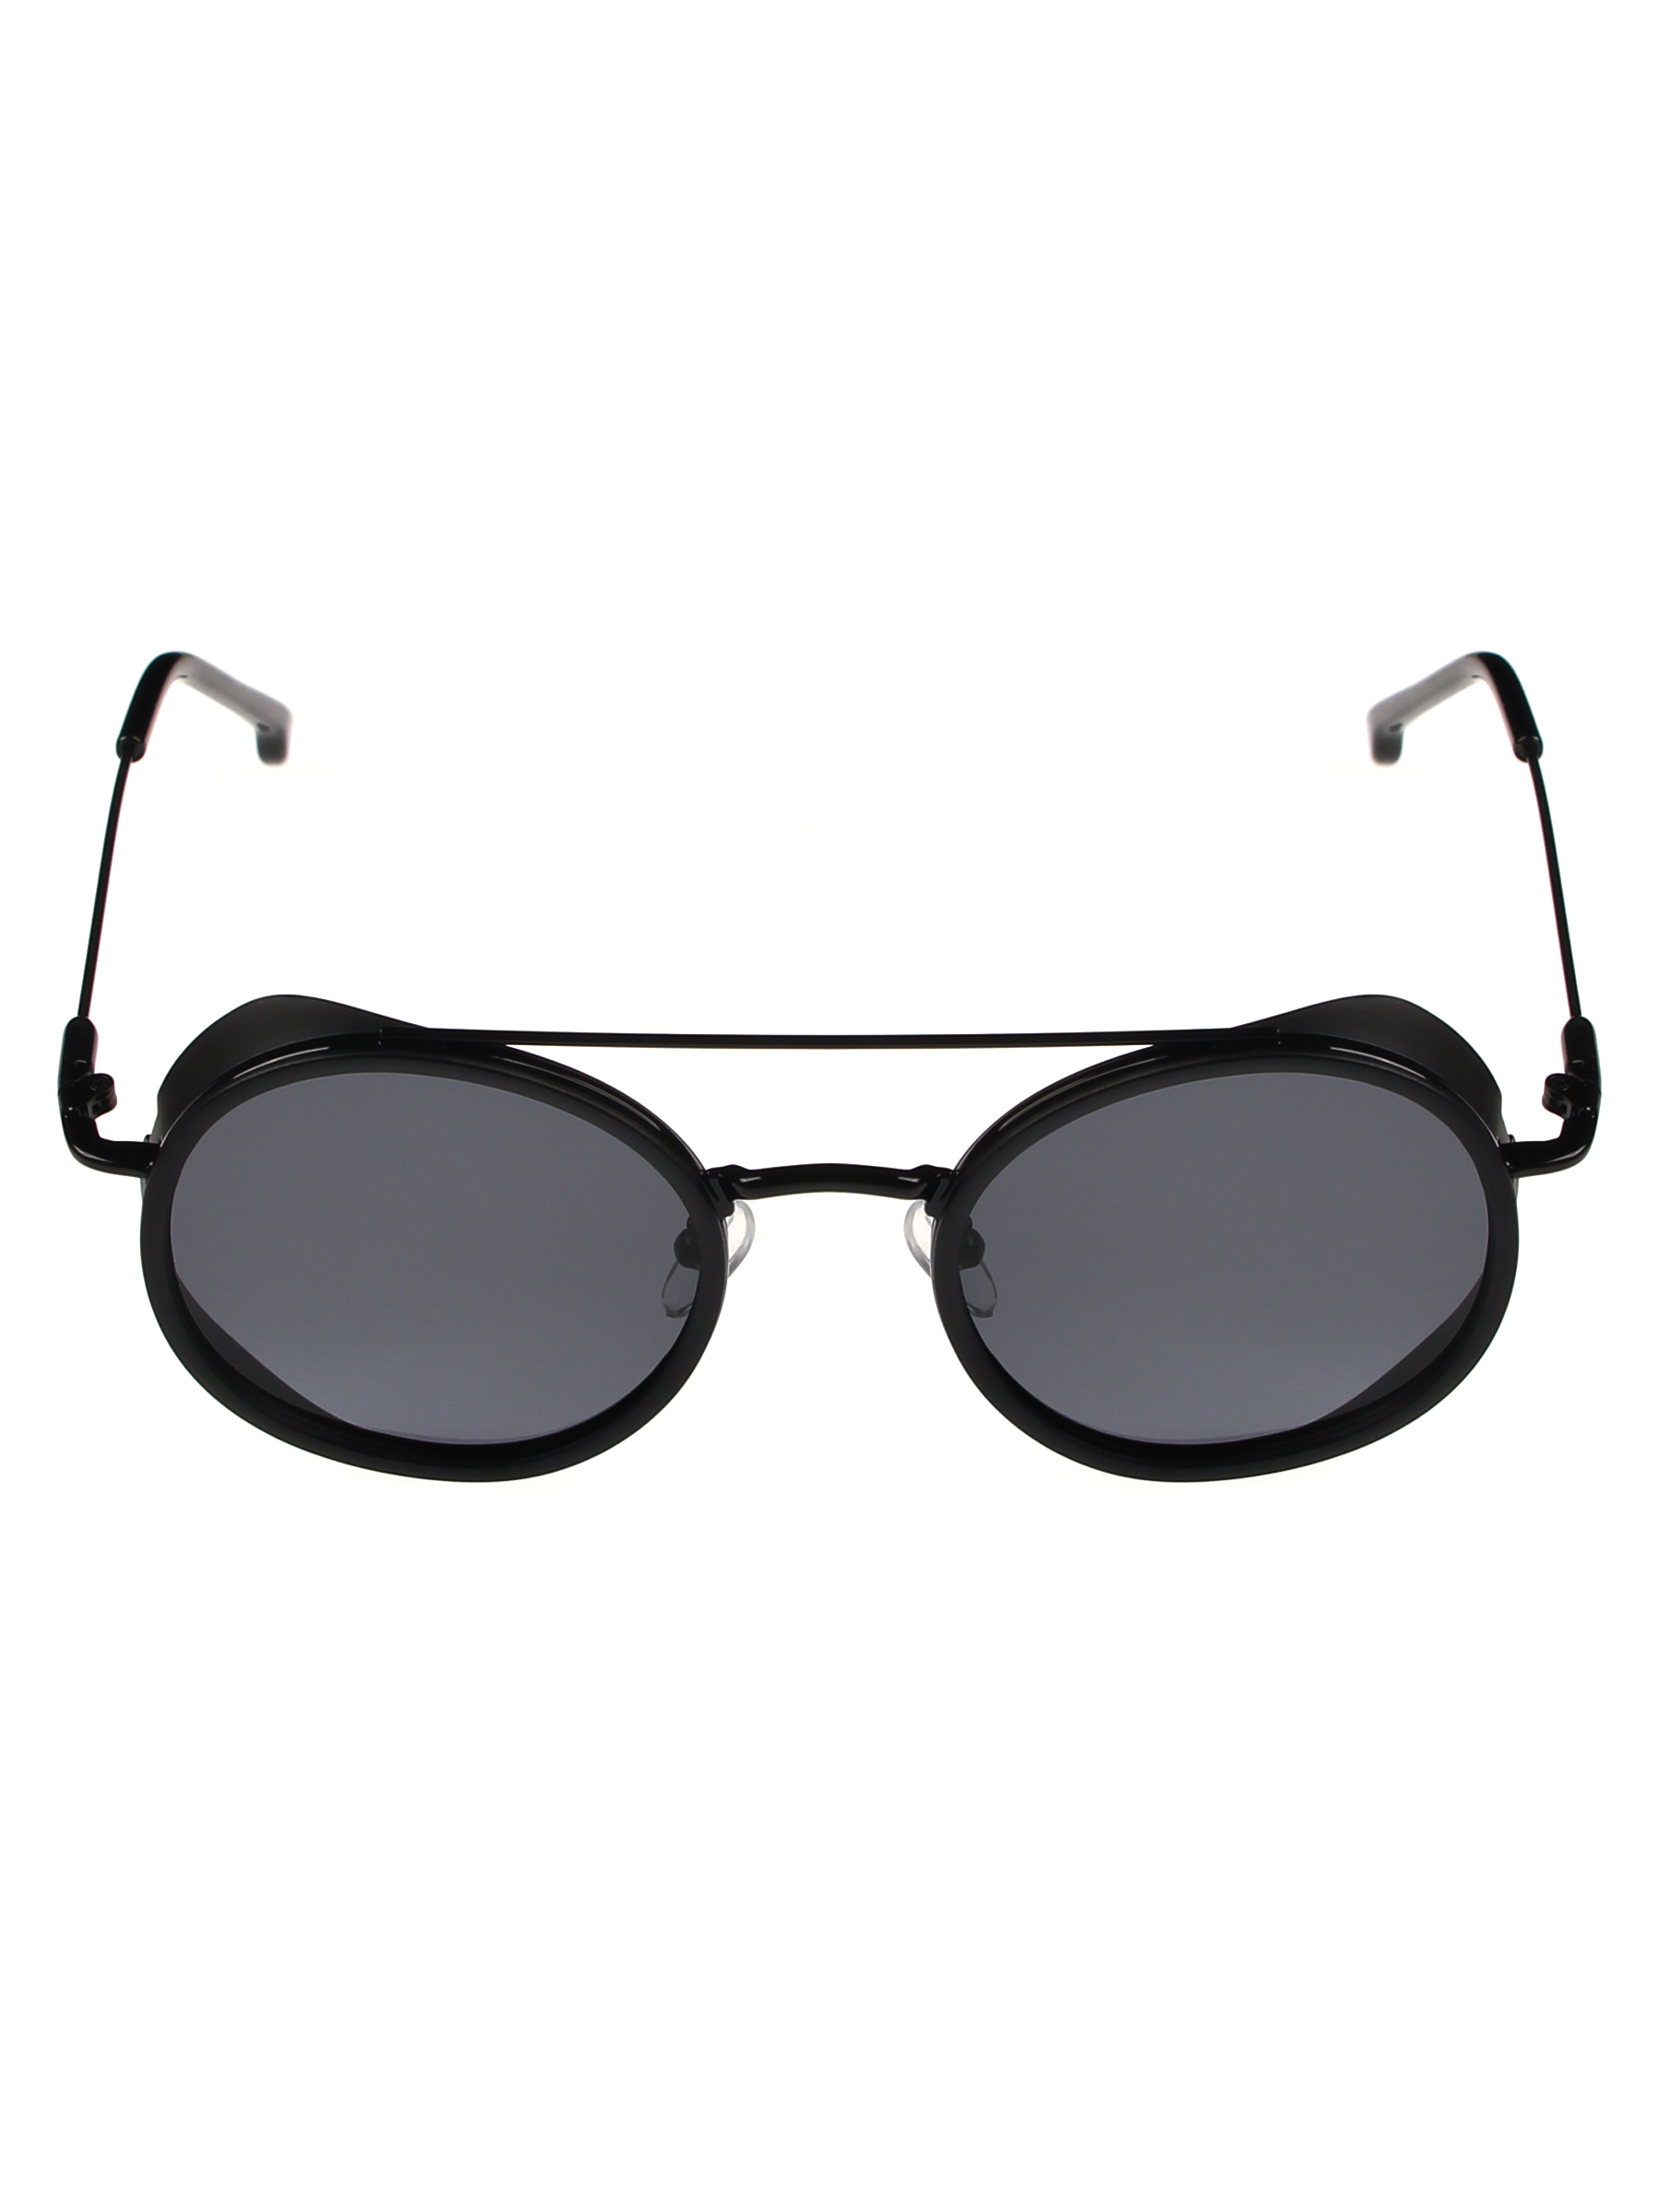 Солнцезащитные очки женские Pretty Mania NDP007 черные